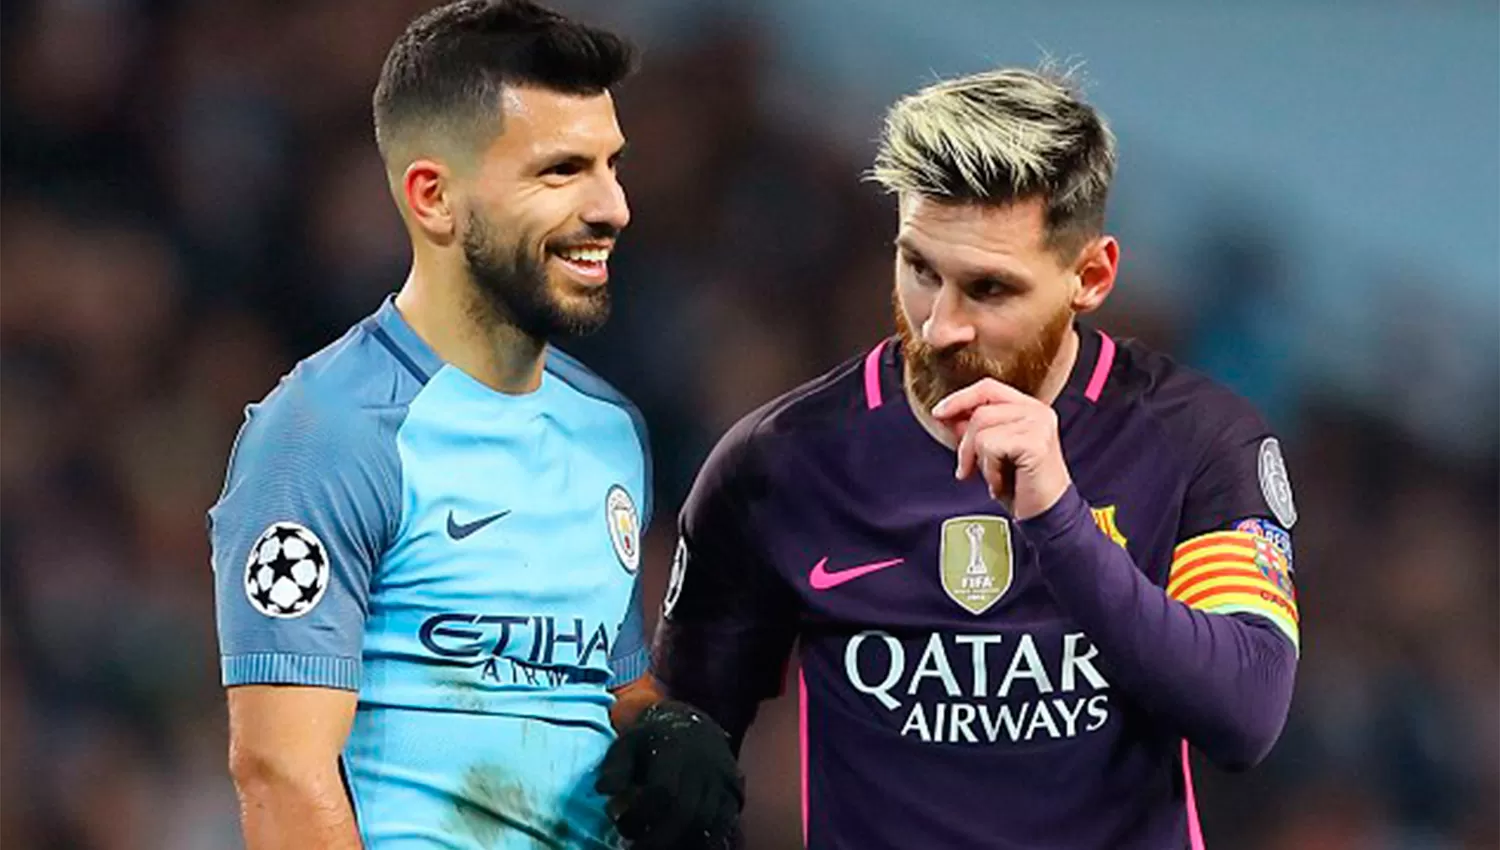 Barcelona de Messi y Manchester City de Agüero, lo más destacado de la agenda deportiva: hora y TV